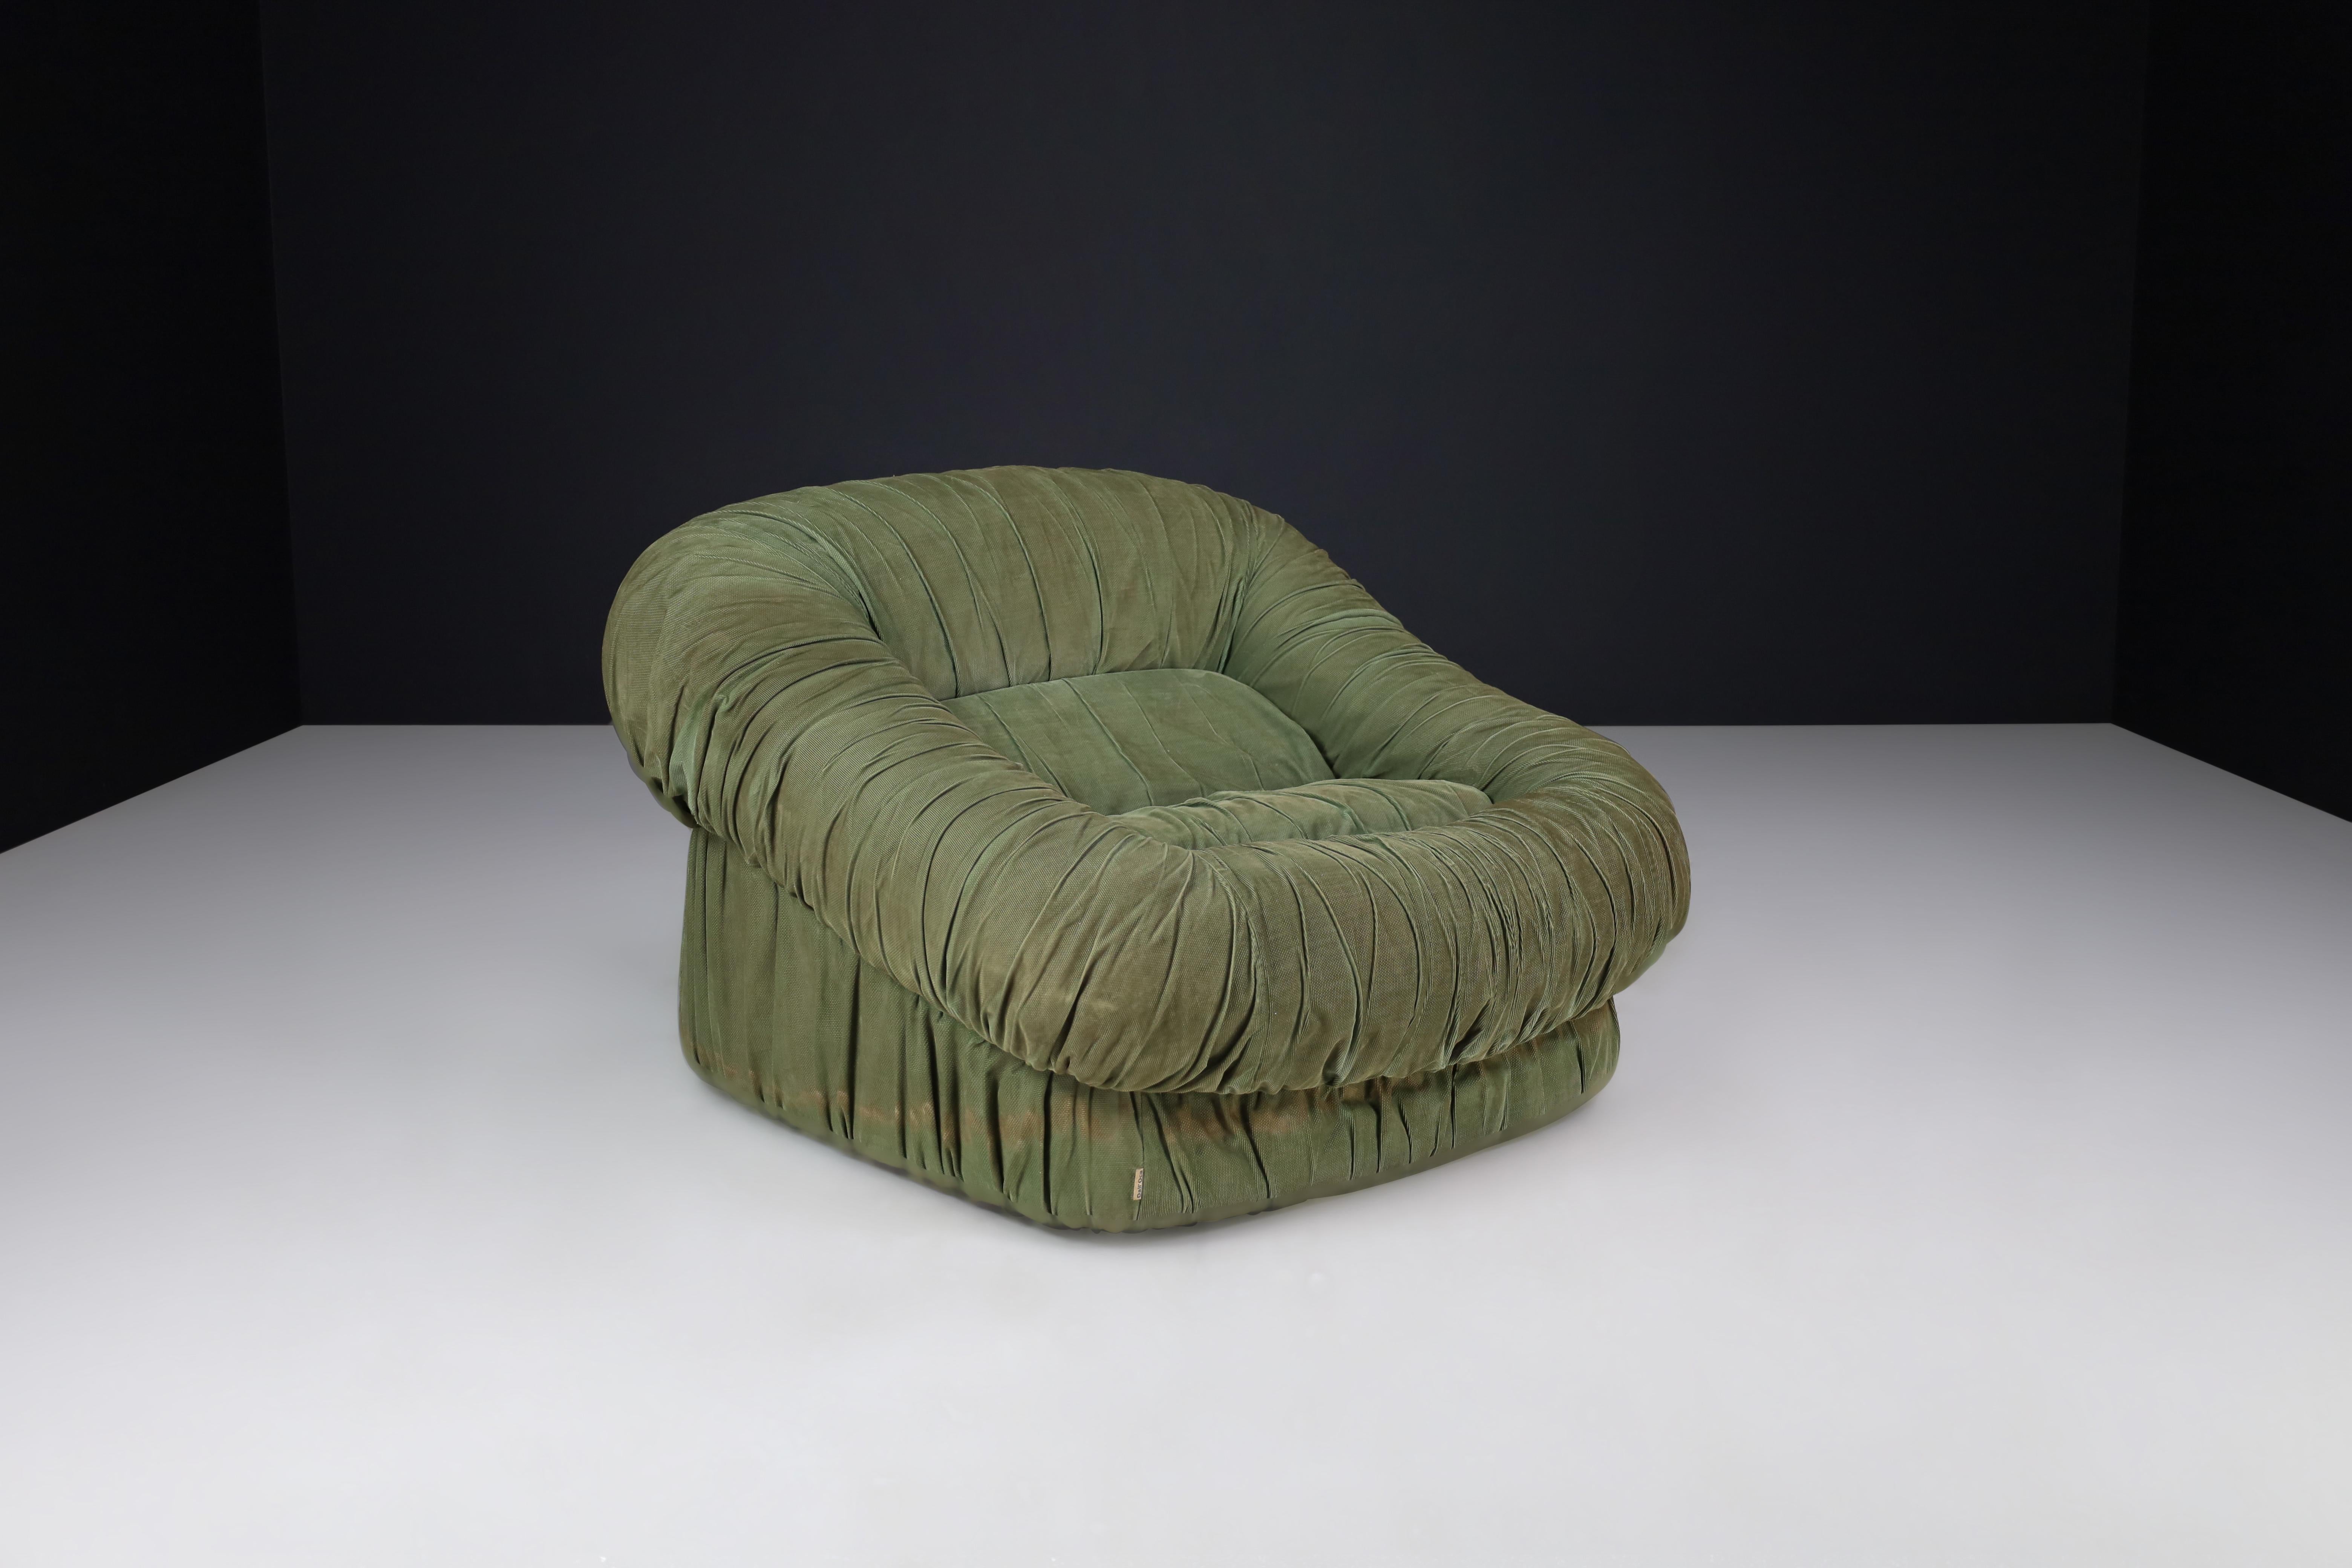 De Pas, D'Urbino und Lomazzi für Dall'Oca Lounge Chair, Italien 1970er Jahre

Dies ist ein Mid-Century Modern Lounge Chair, der 1970 in Italien von De Pas, D'Urbino und Lomazzi für Dall'Oca hergestellt wurde. Der Sessel ist mit grünem